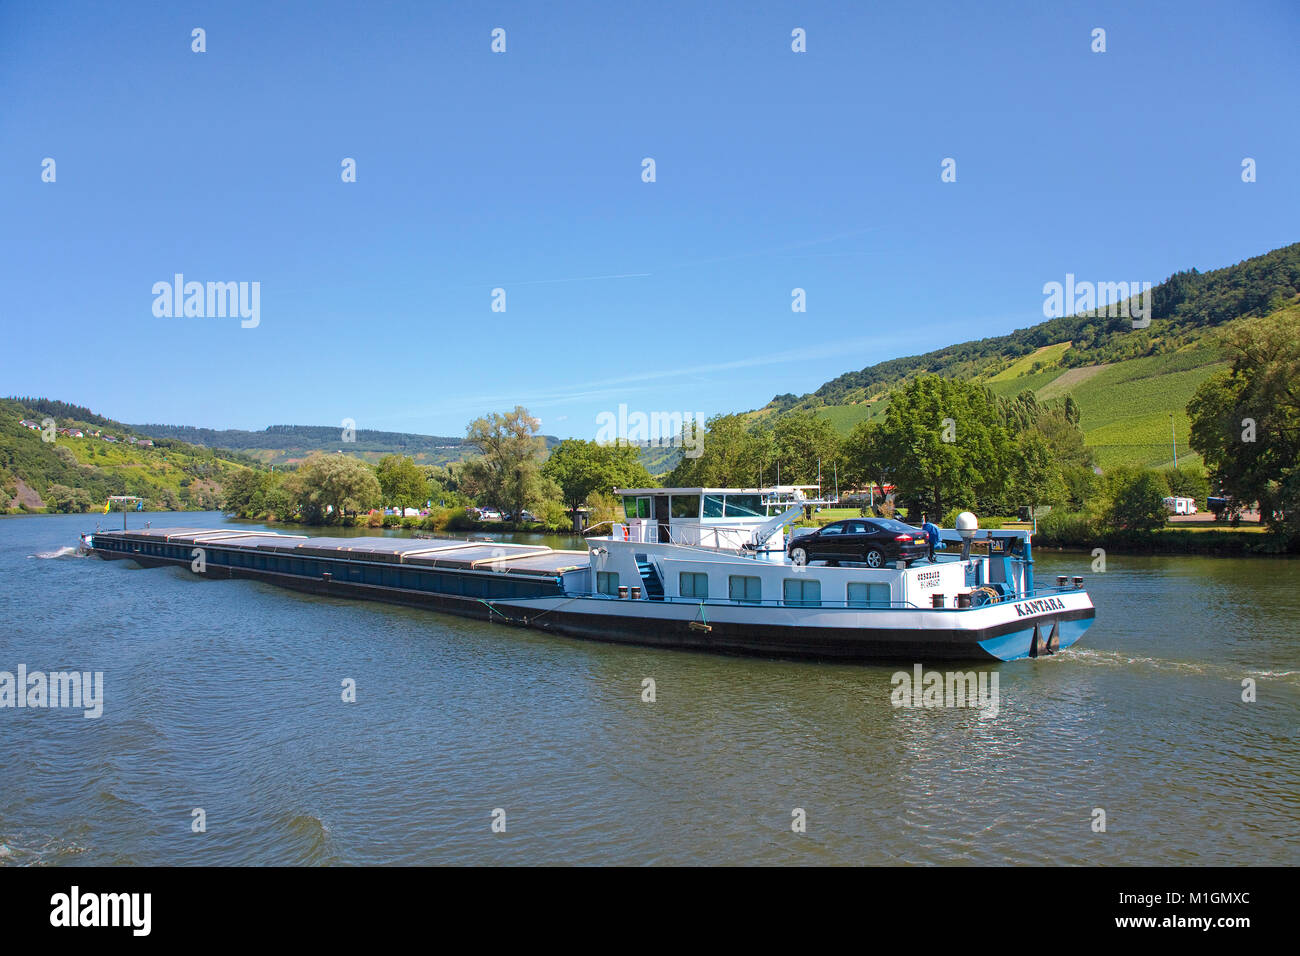 Carguero en el río Mosela, en Traben-Trarbach, río Mosela, Renania-Palatinado, Alemania, Europa Foto de stock